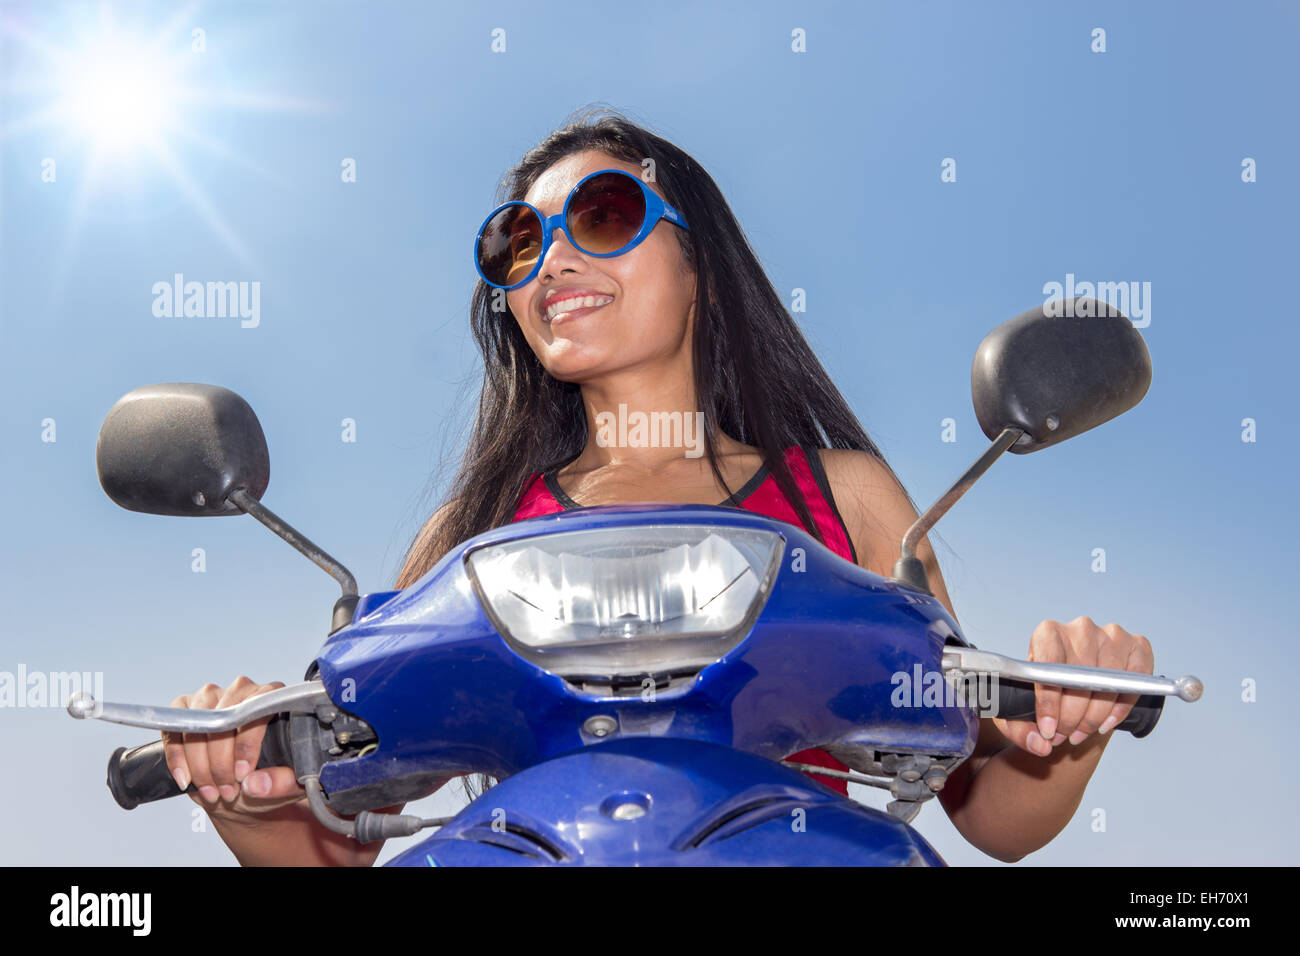 Vorderansicht einer Frau sitzt auf einem Roller auf blauem Hintergrund Stockfoto